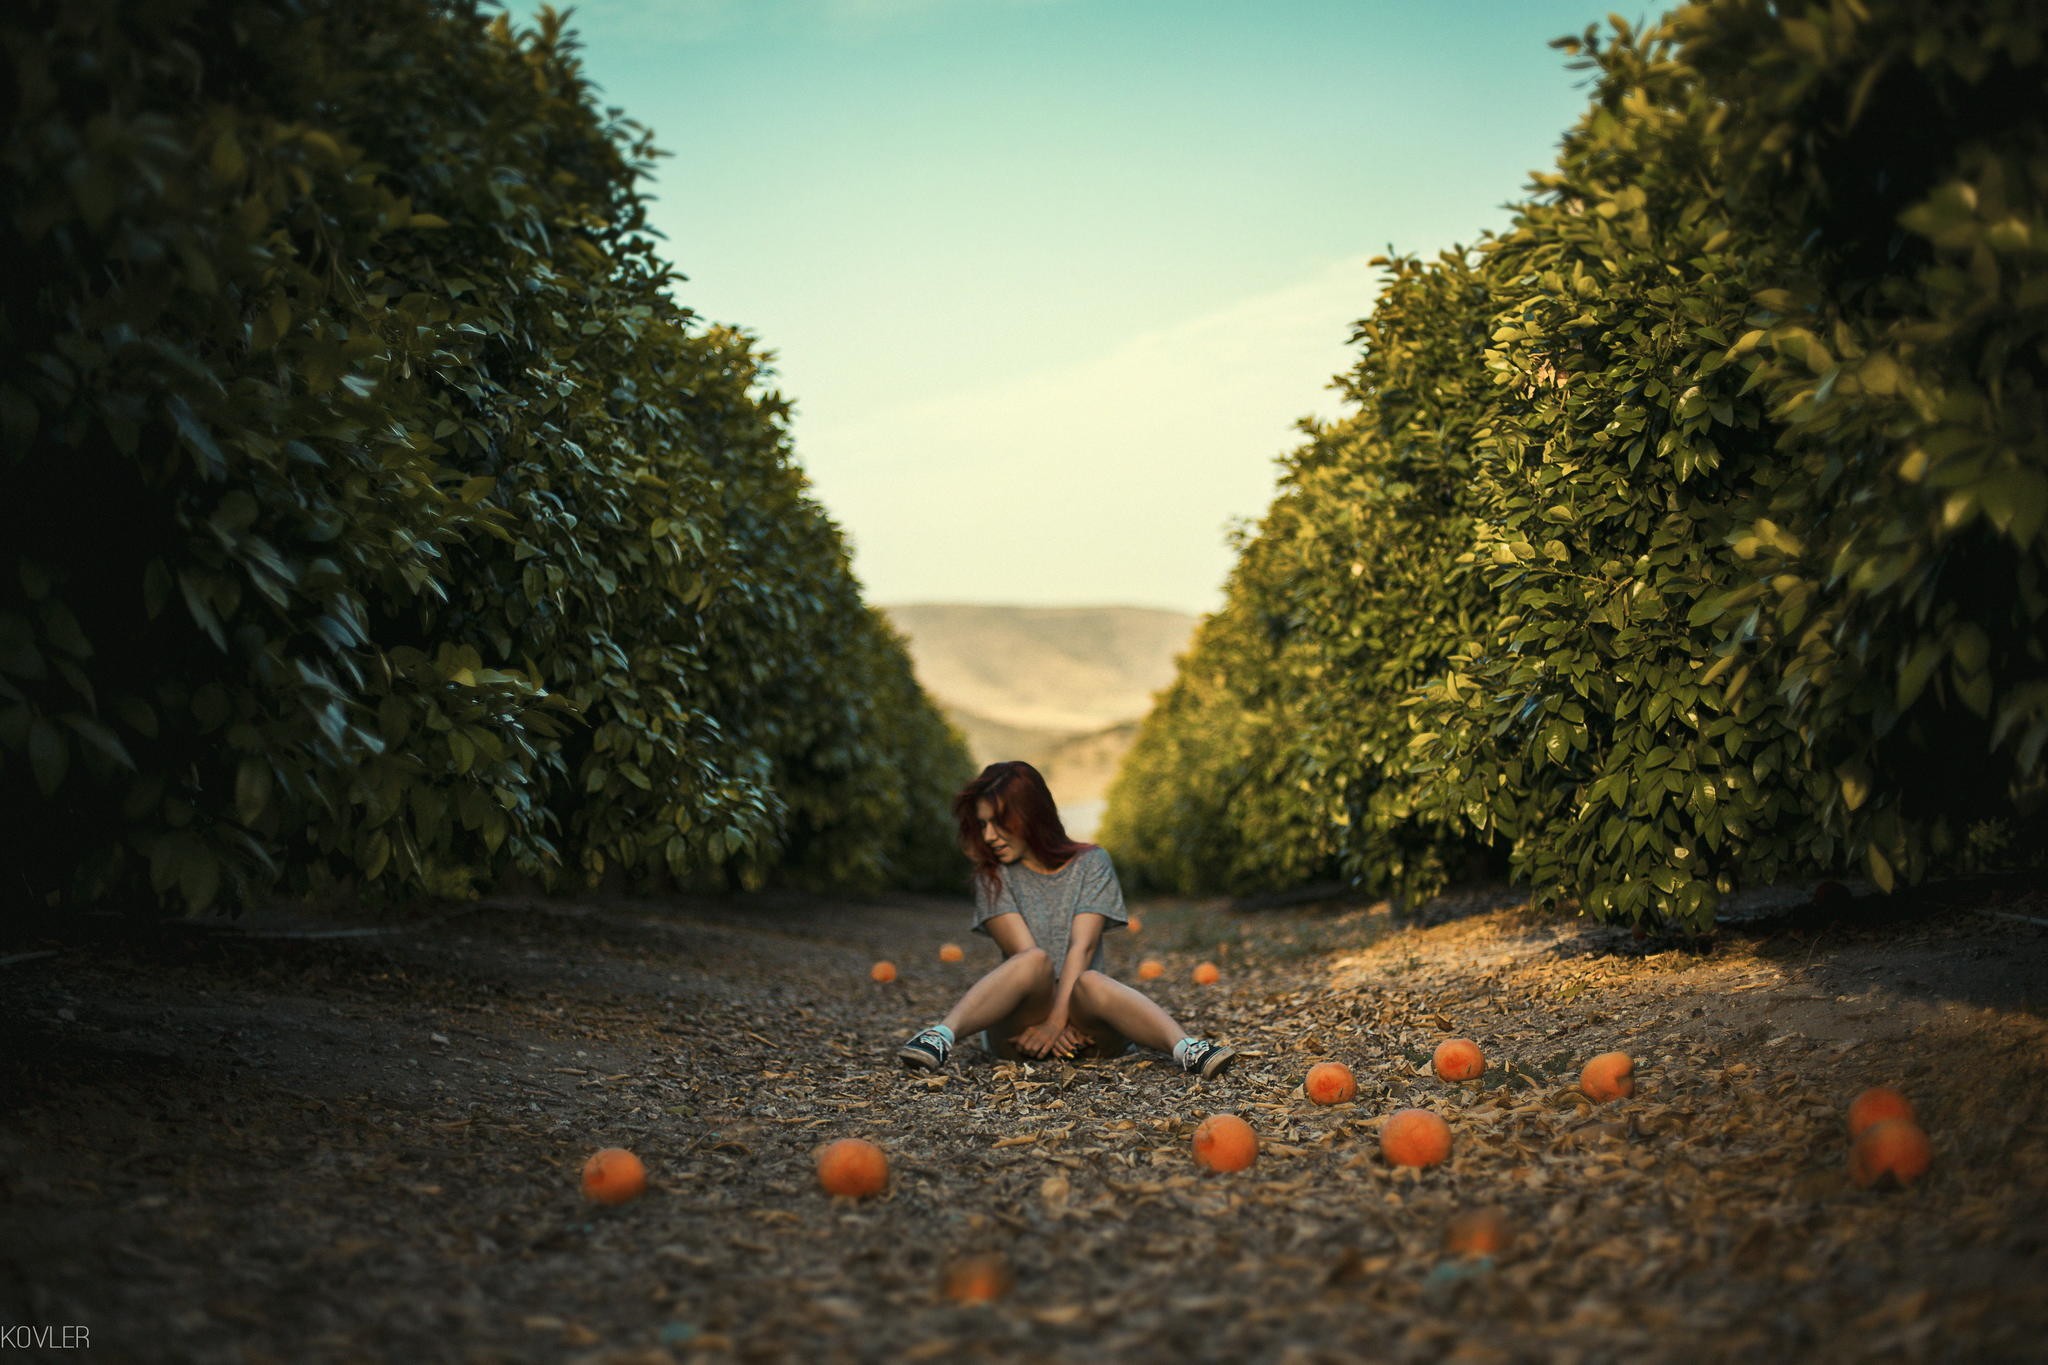 People 2048x1365 women redhead sitting path orange (fruit) Dan Kovler clear sky women outdoors model